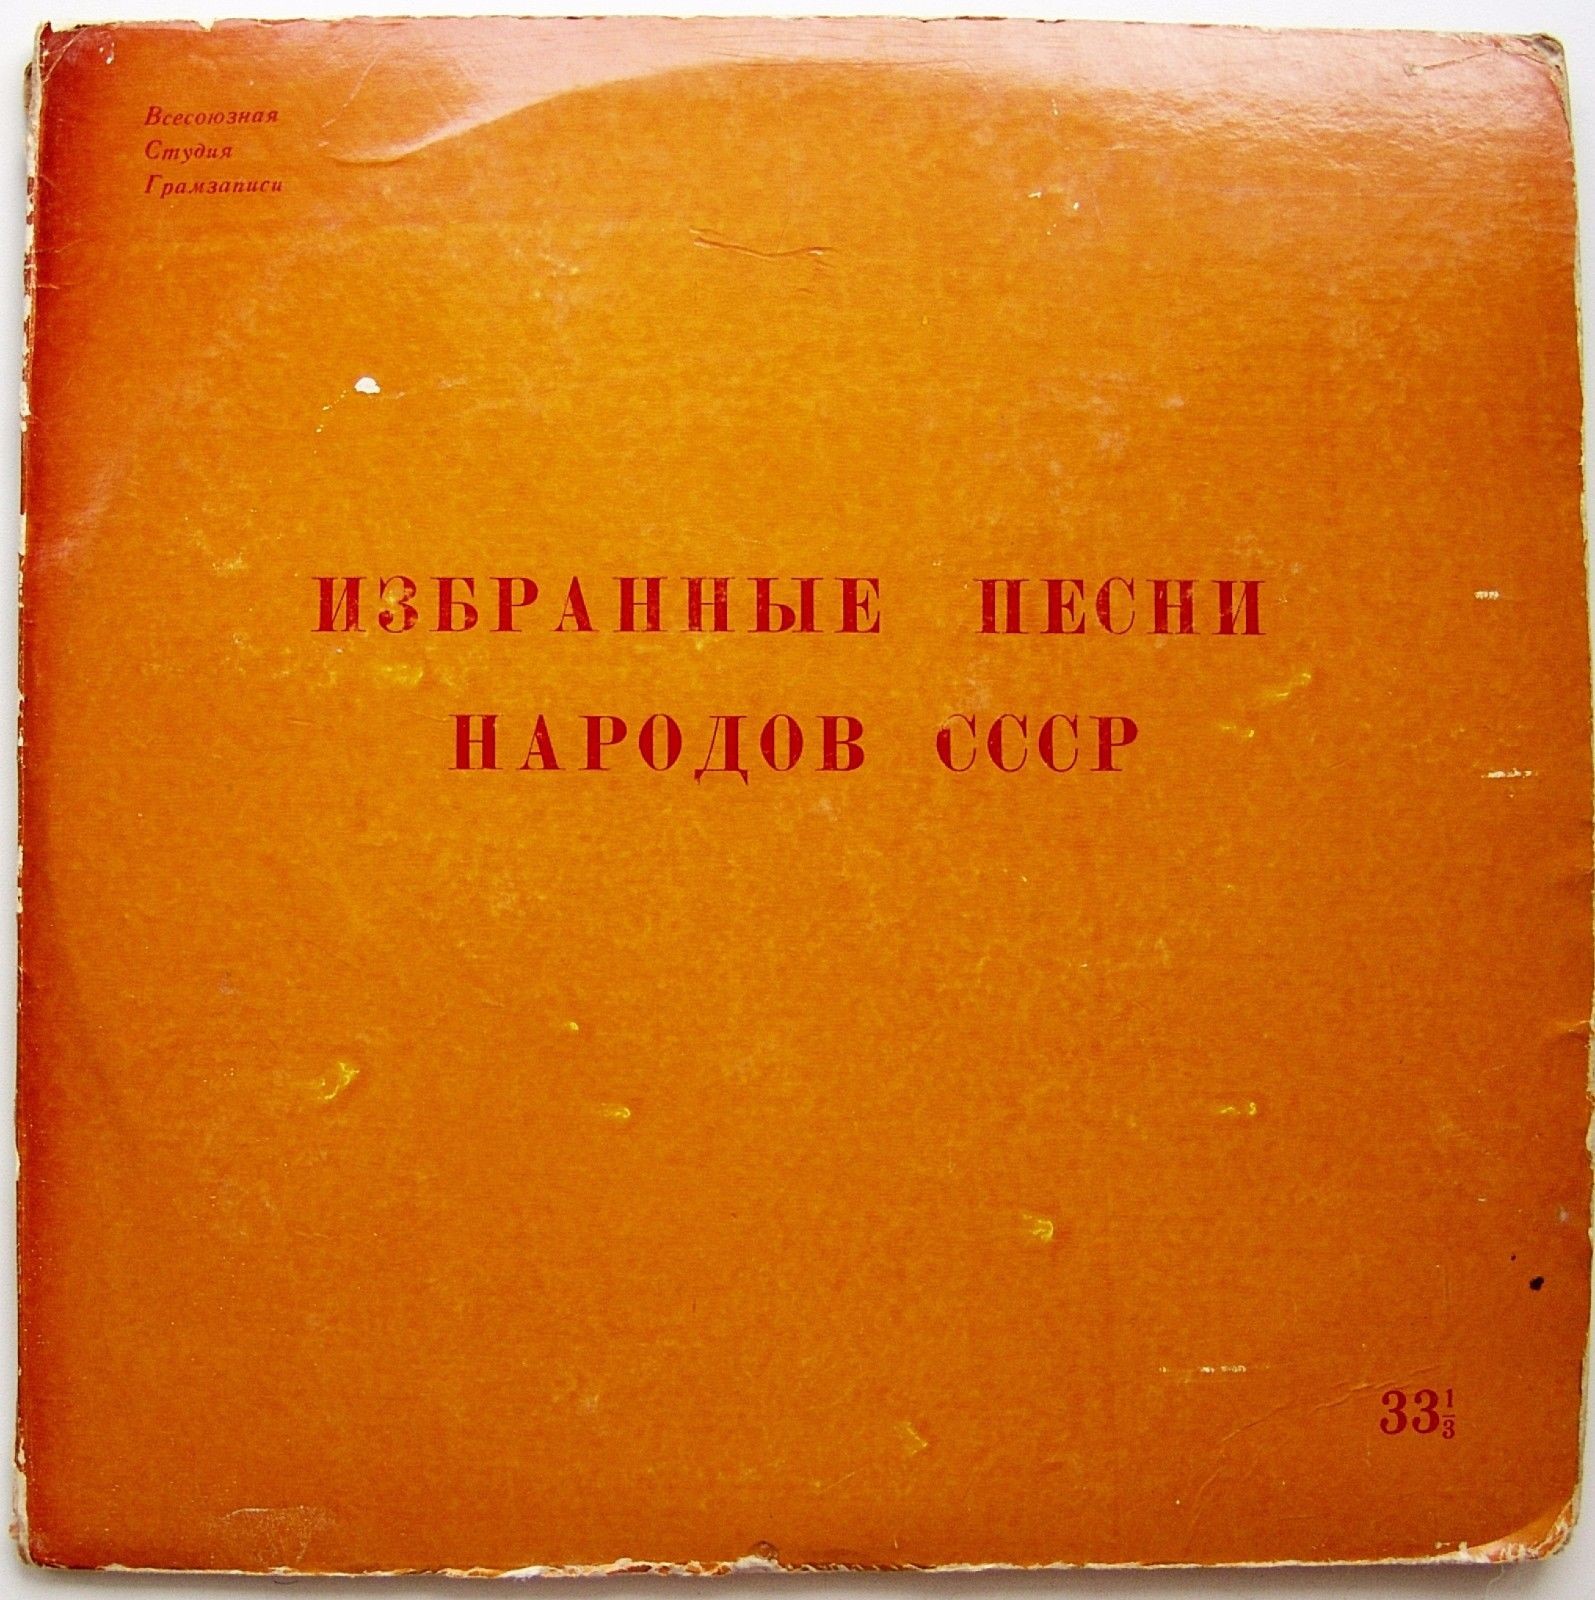 Избранные песни народов СССР